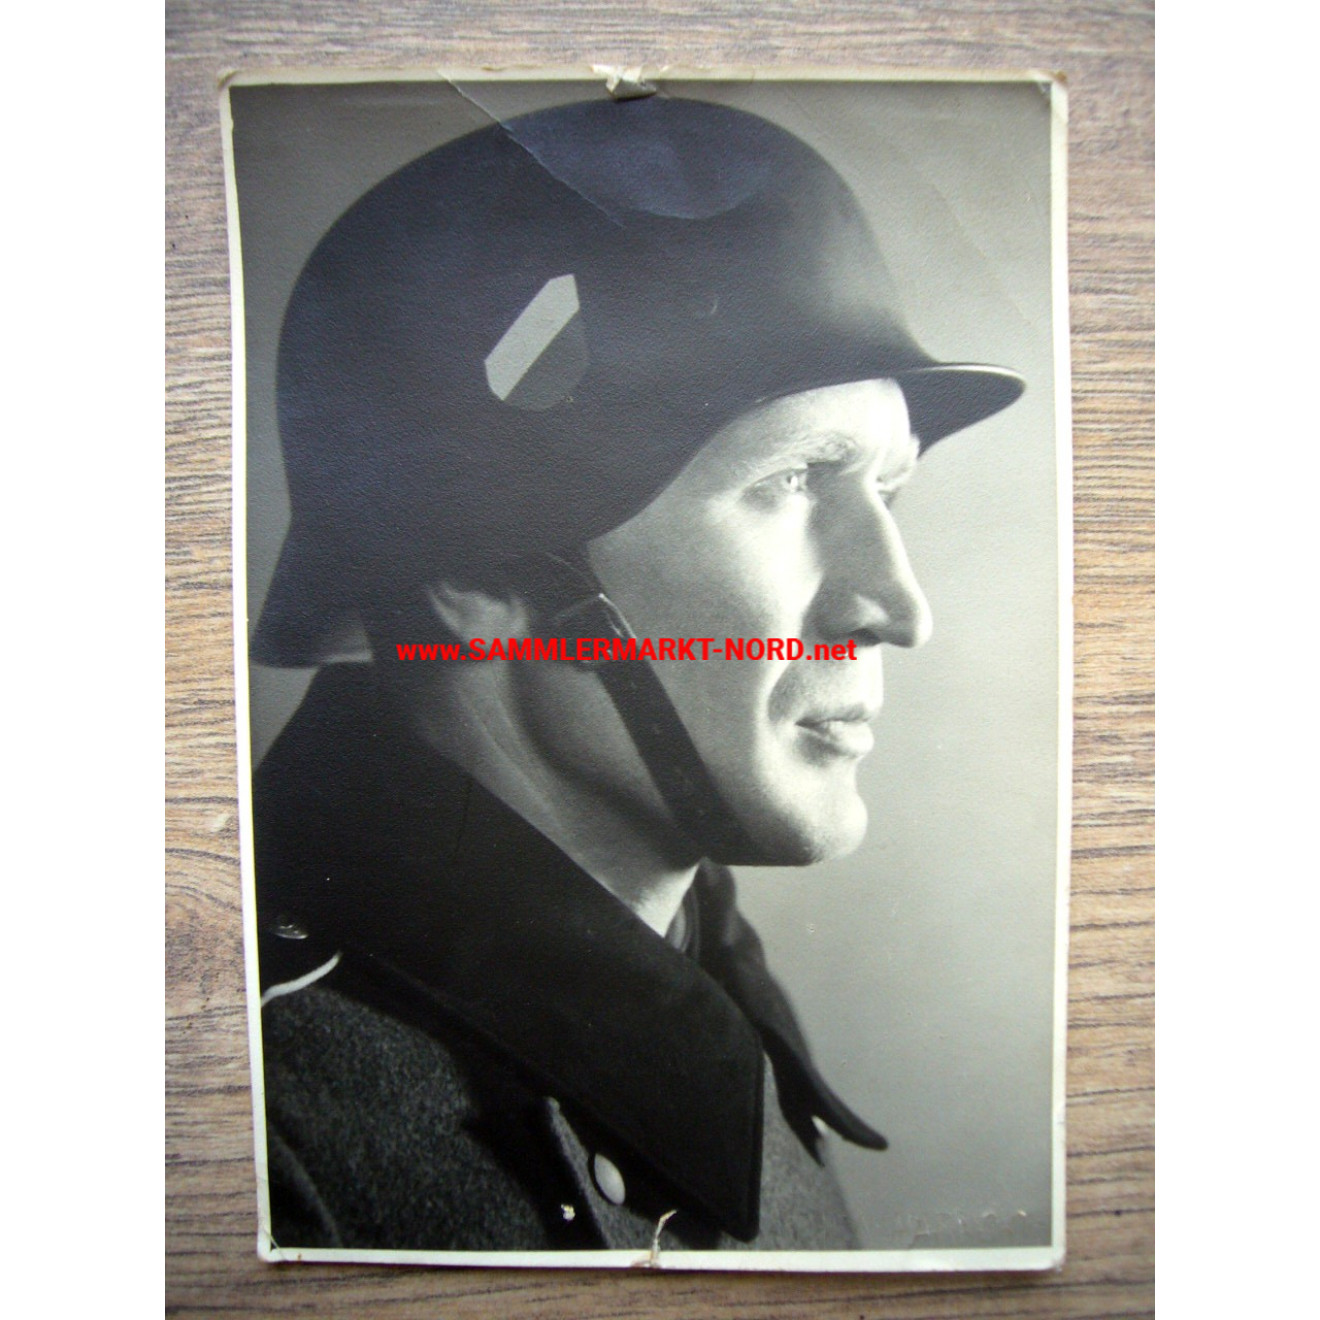 Wehrmacht Soldat mit Stahlhelm (Wappenschild)